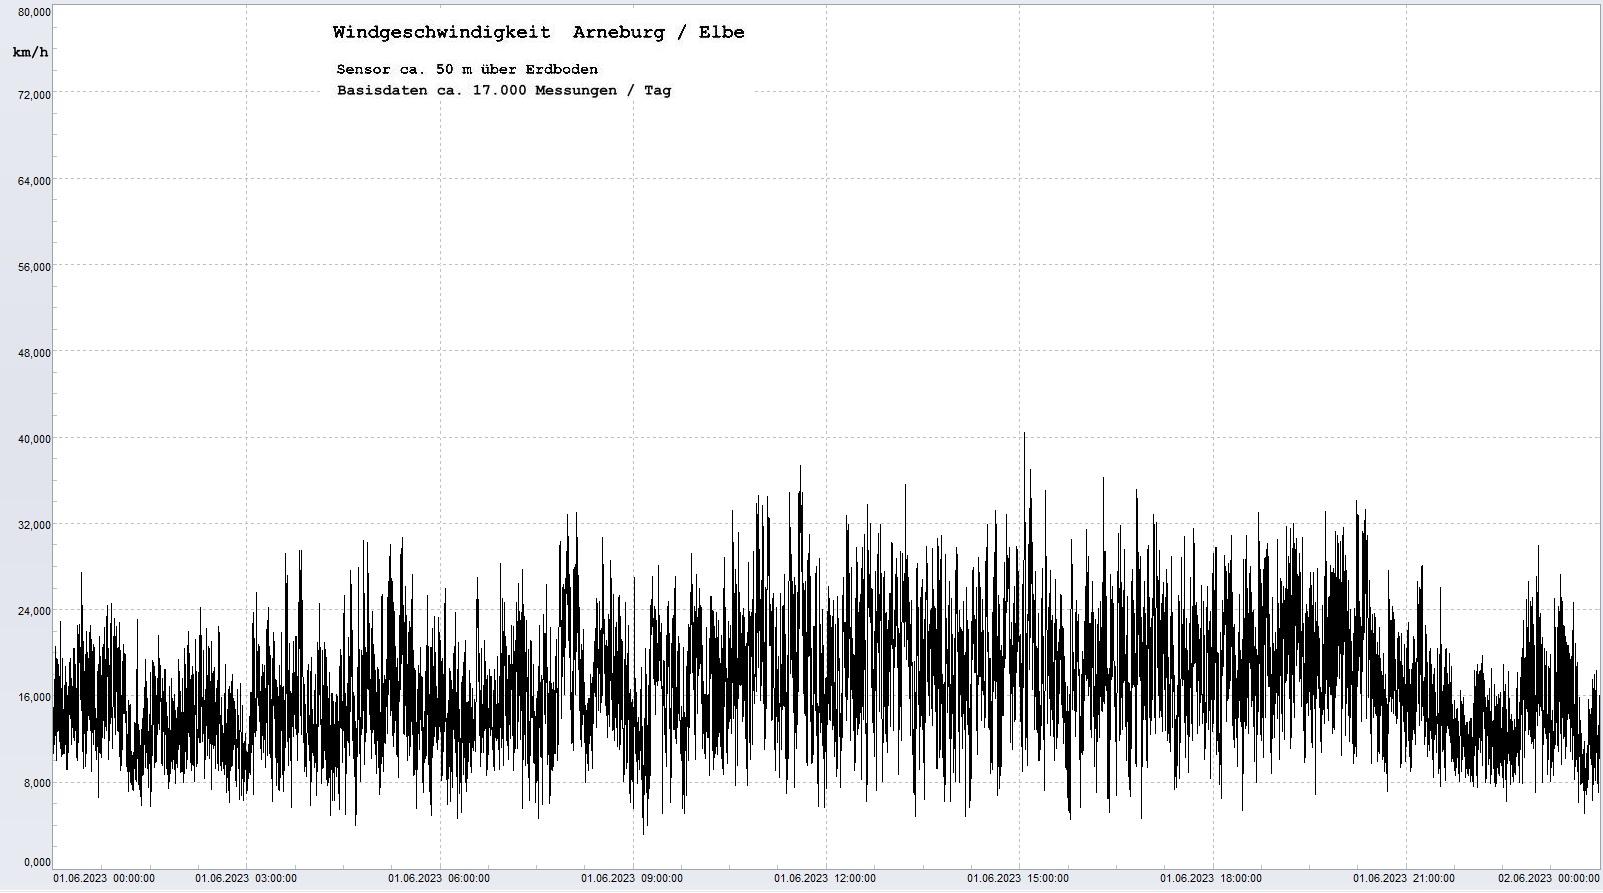 Arneburg Tages-Diagramm Winddaten, 01.06.2023
  Diagramm, Sensor auf Gebude, ca. 50 m ber Erdboden, Basis: 5s-Aufzeichnung